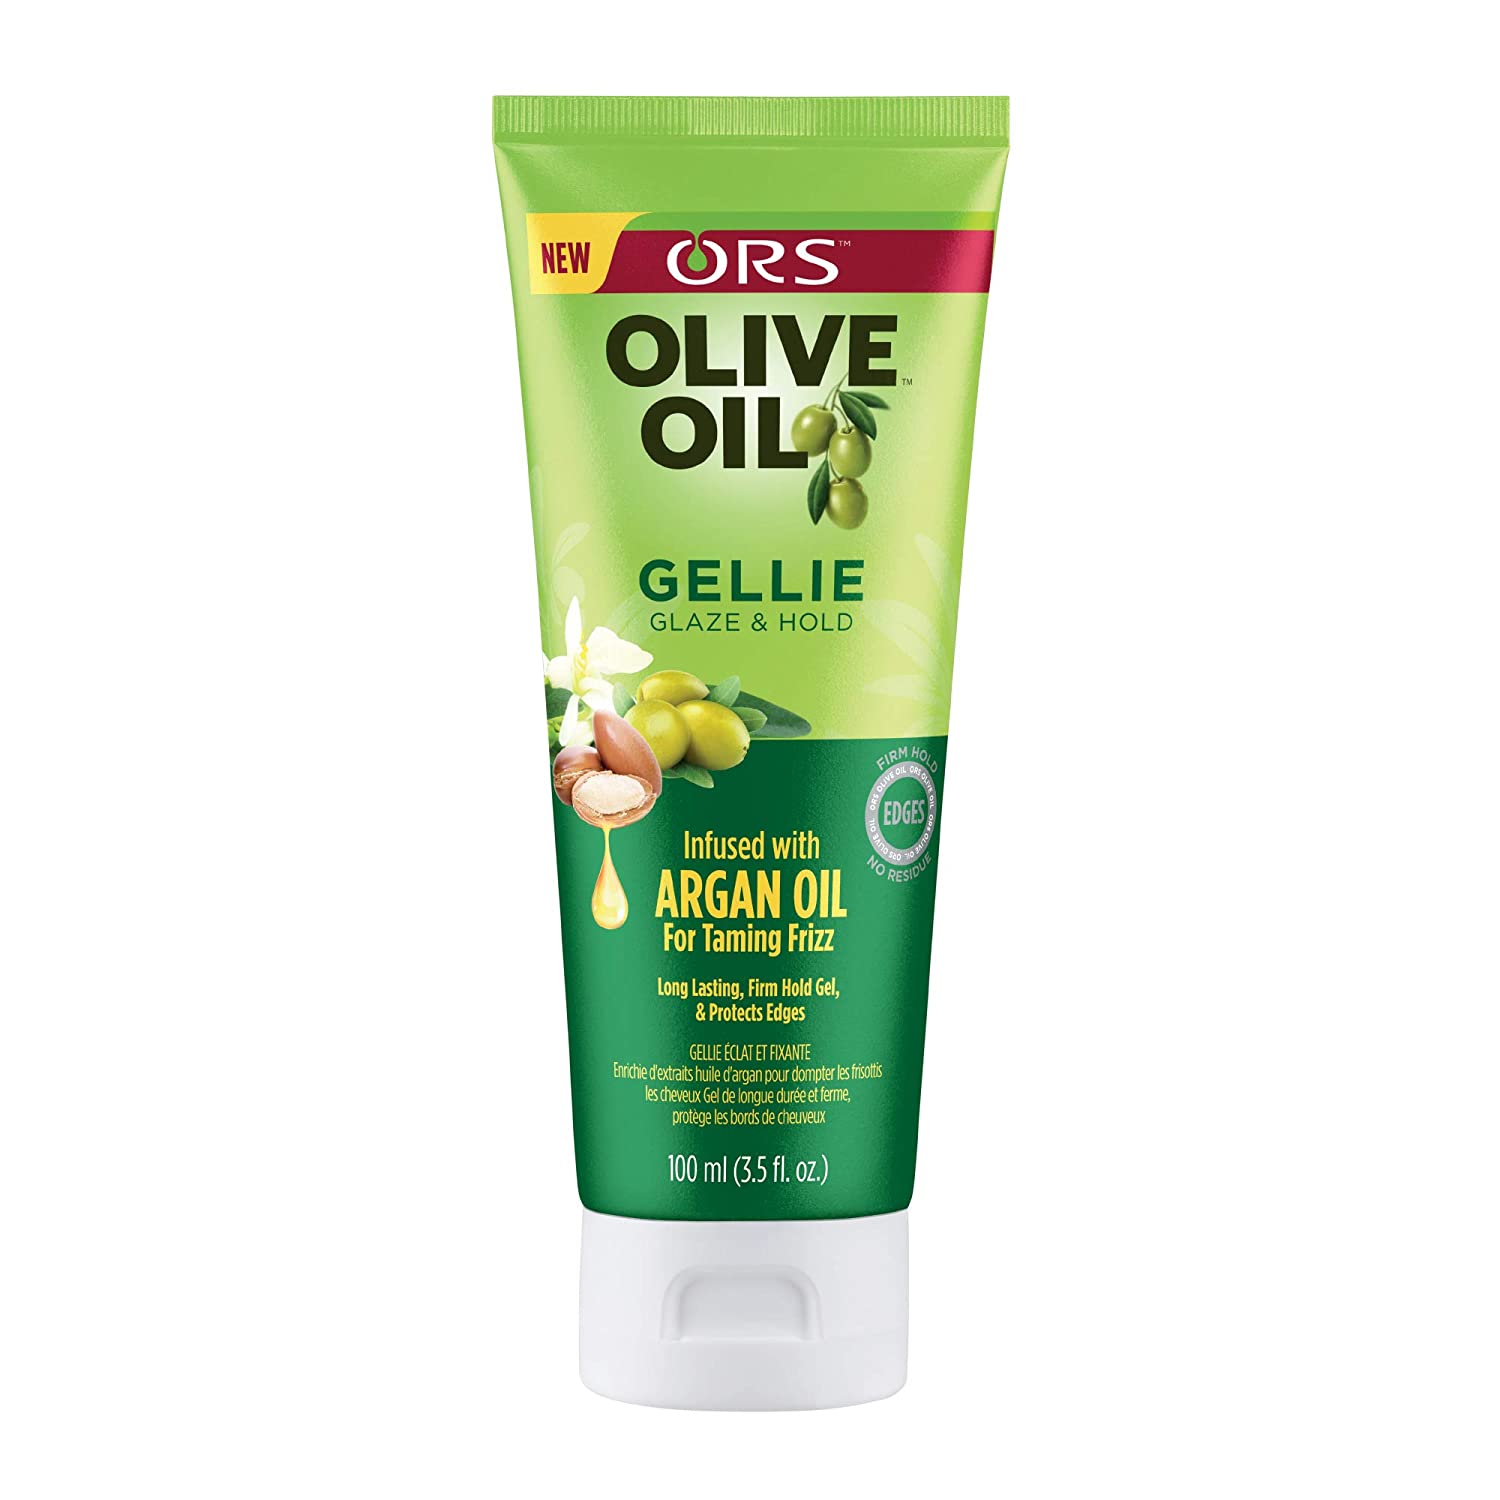 ORS Olive Oil Gellie Glaze & Hold - 3.5oz